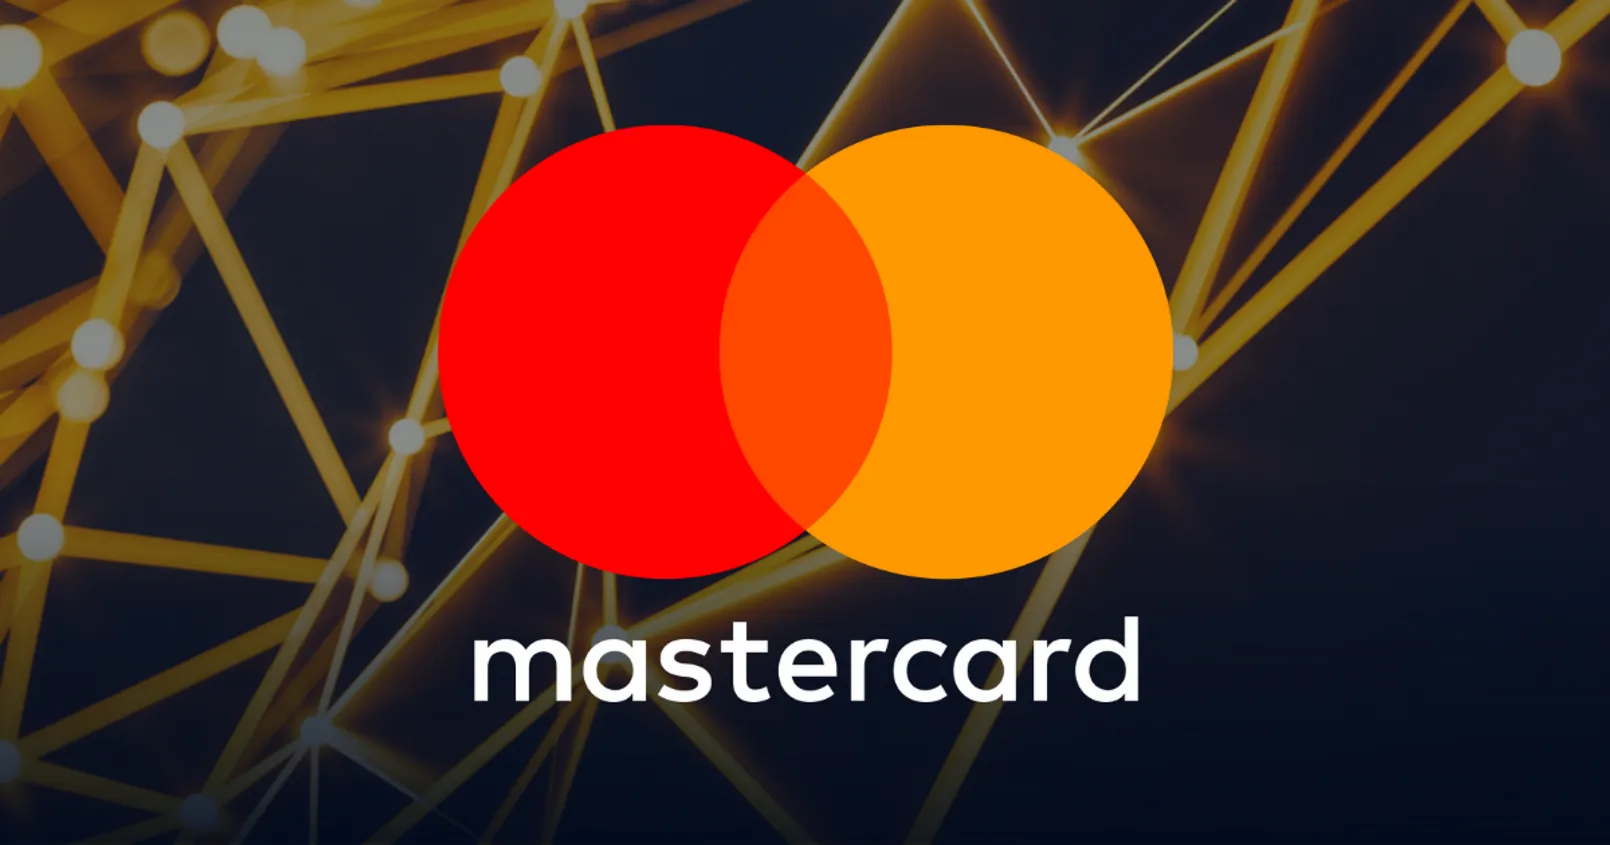 'Mastercard' เดินหน้า หยิบ Blockchain ยืนยันตัวตนผู้ใช้งาน หวังแก้ปัญหา 'การโดนโกง' ในโลกคริปโต